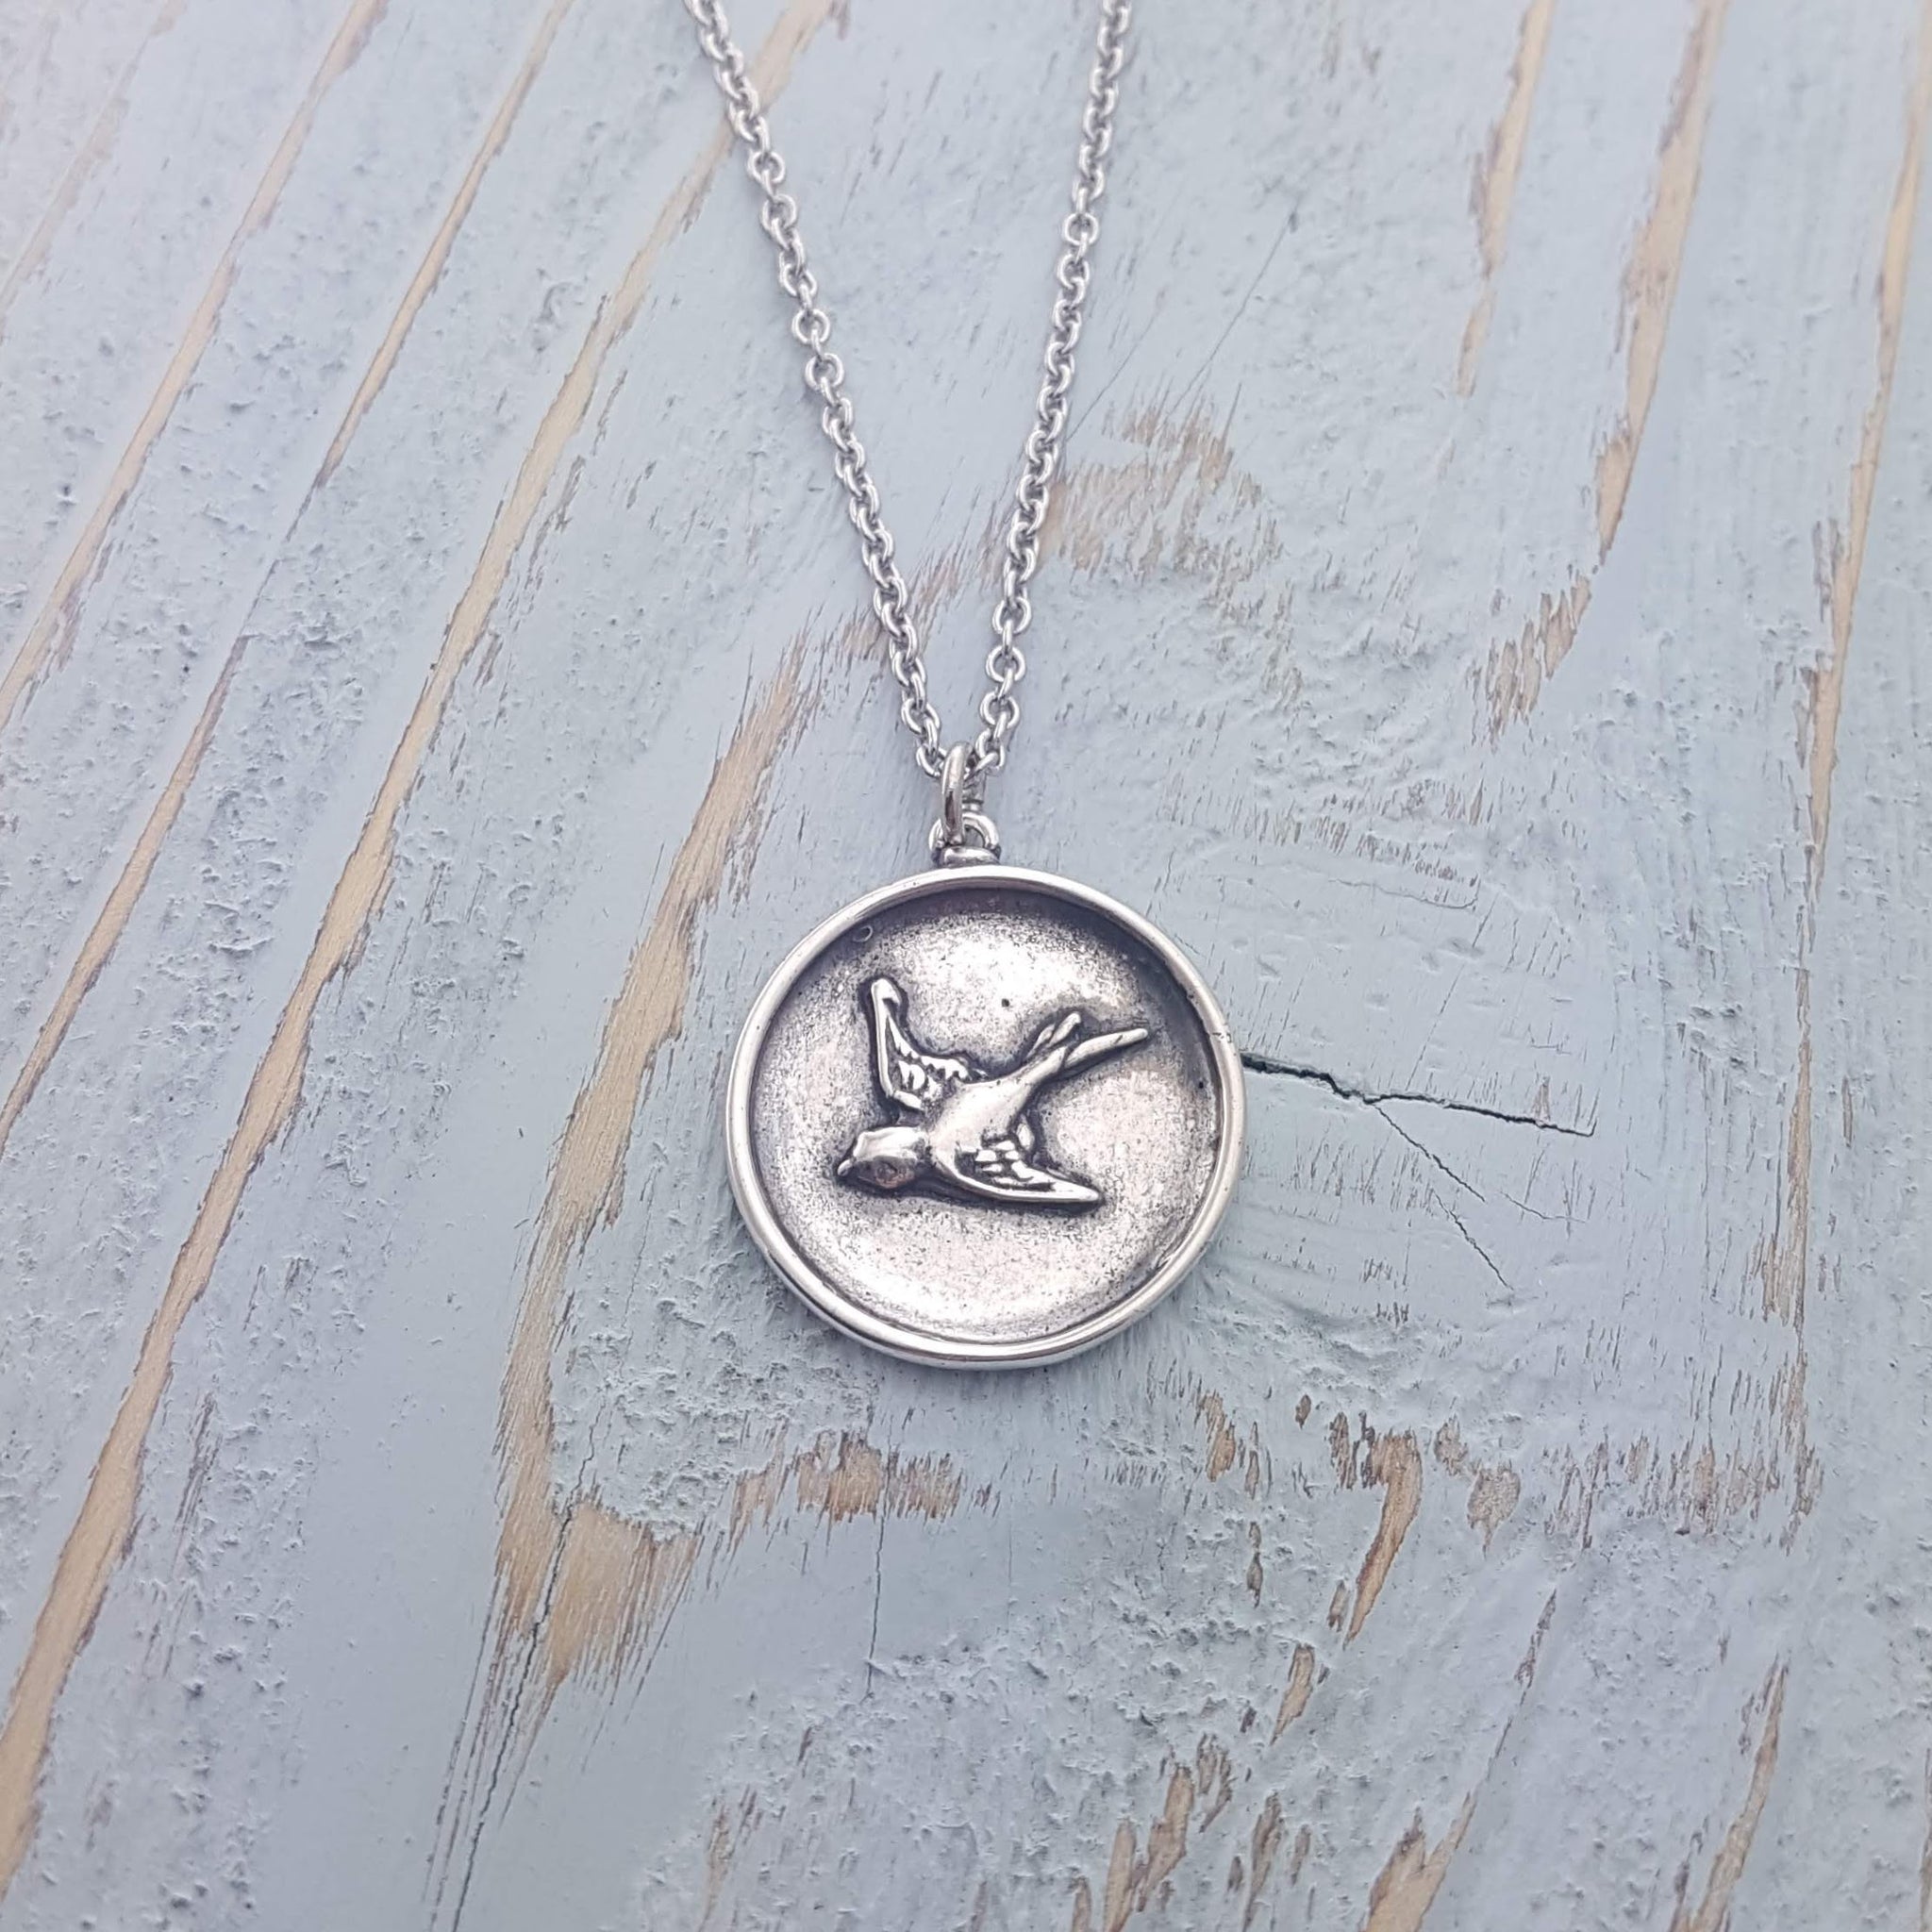 Sparrow Necklace - Gwen Delicious Jewelry Designs